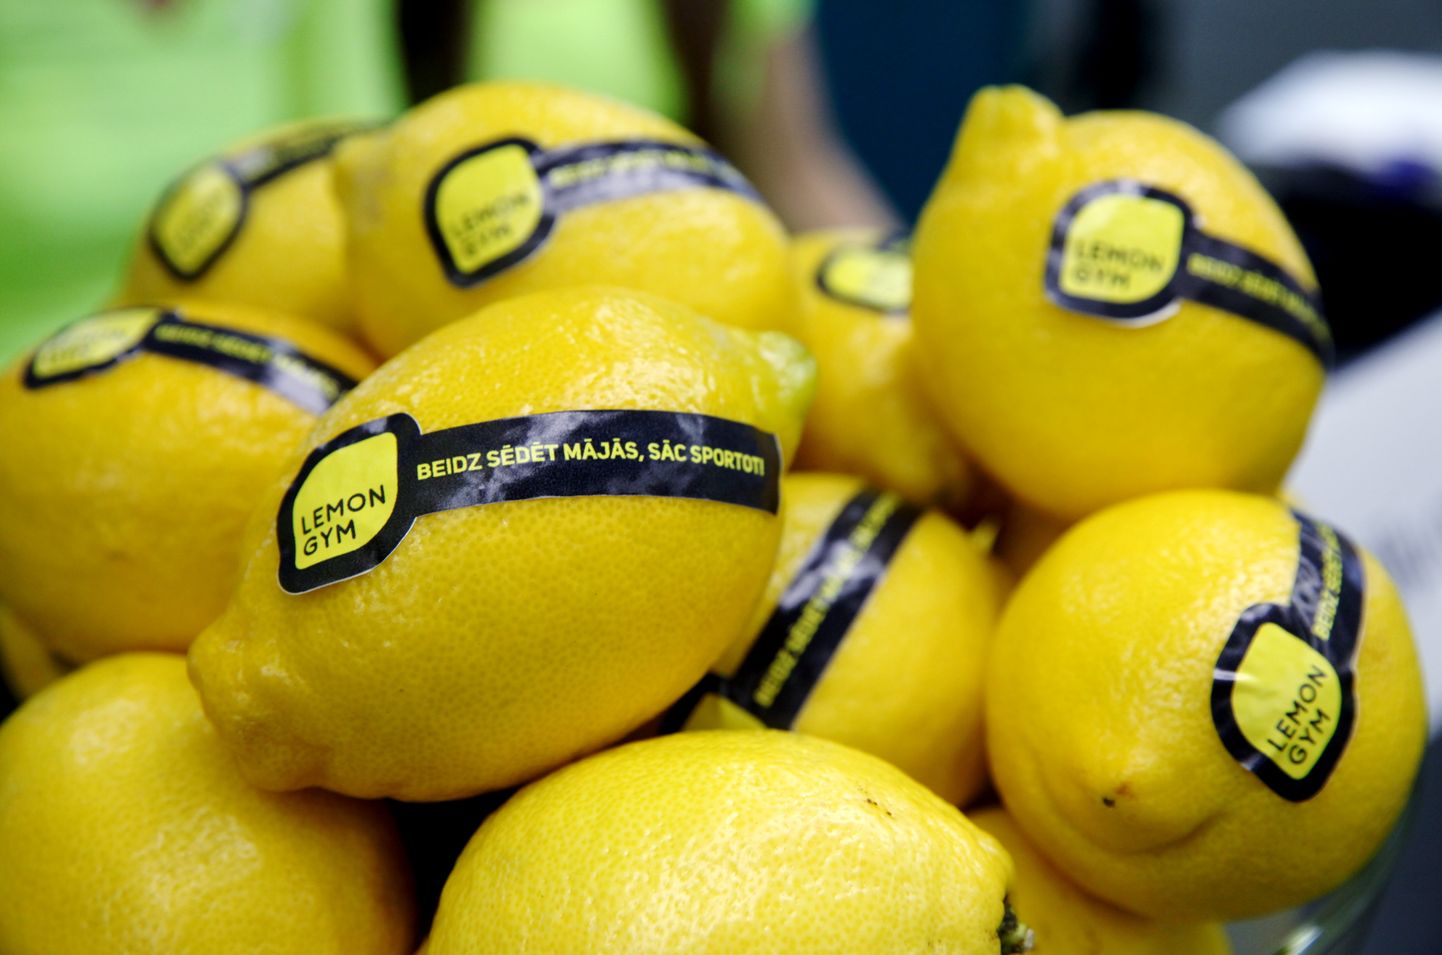 Citroni pirmā budžeta klases sporta kluba "Lemon Gym" atklāšanā.